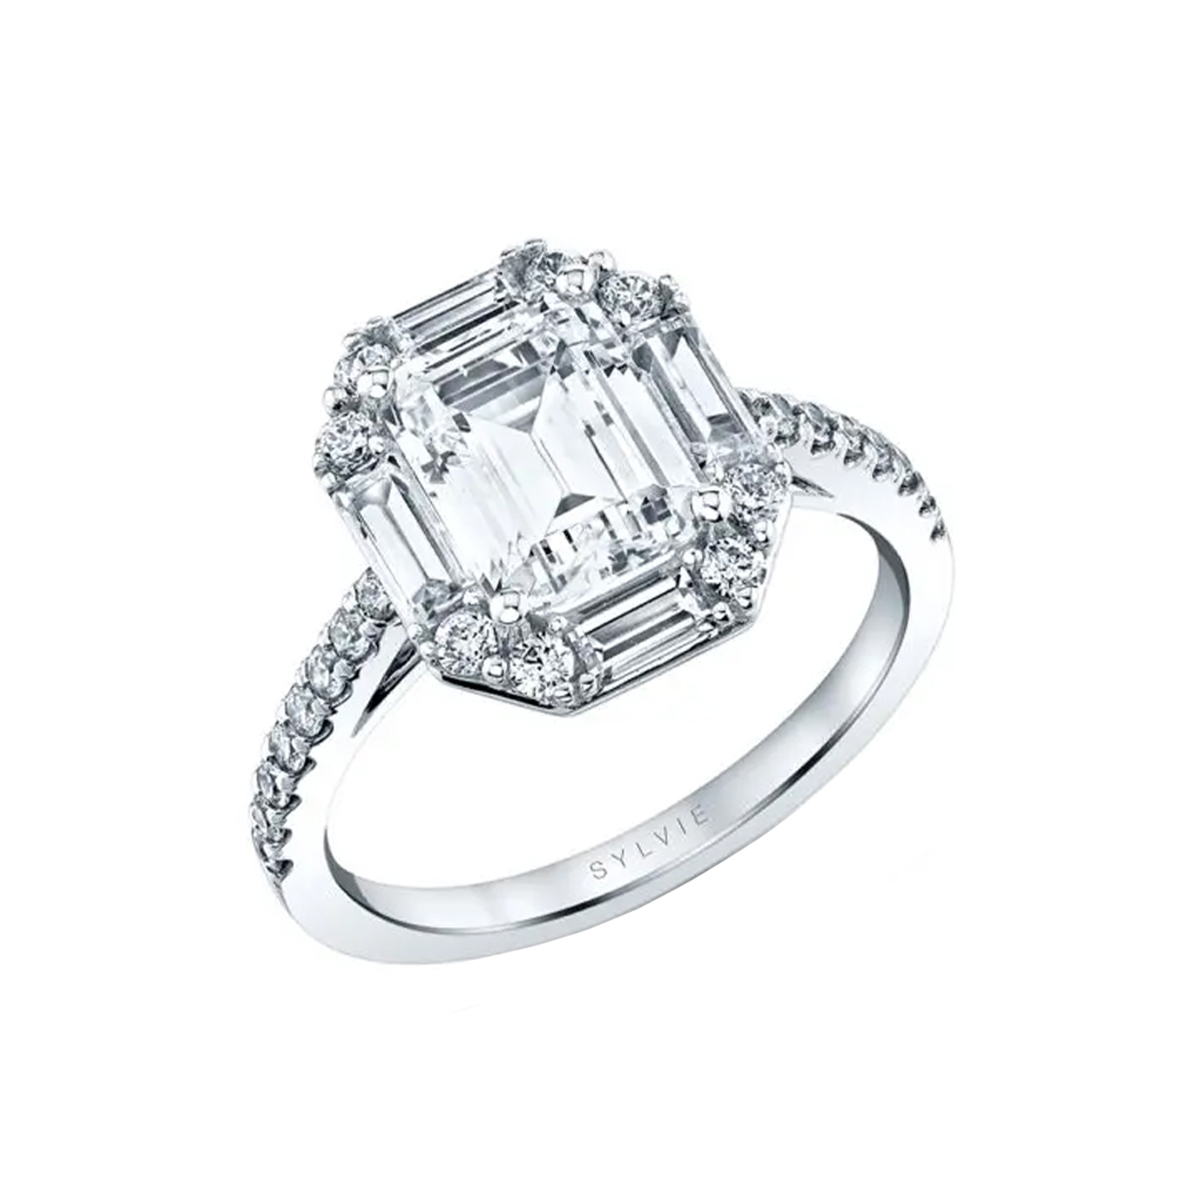 Emerald Cut Vintage Sample Engagement Ring - Presley